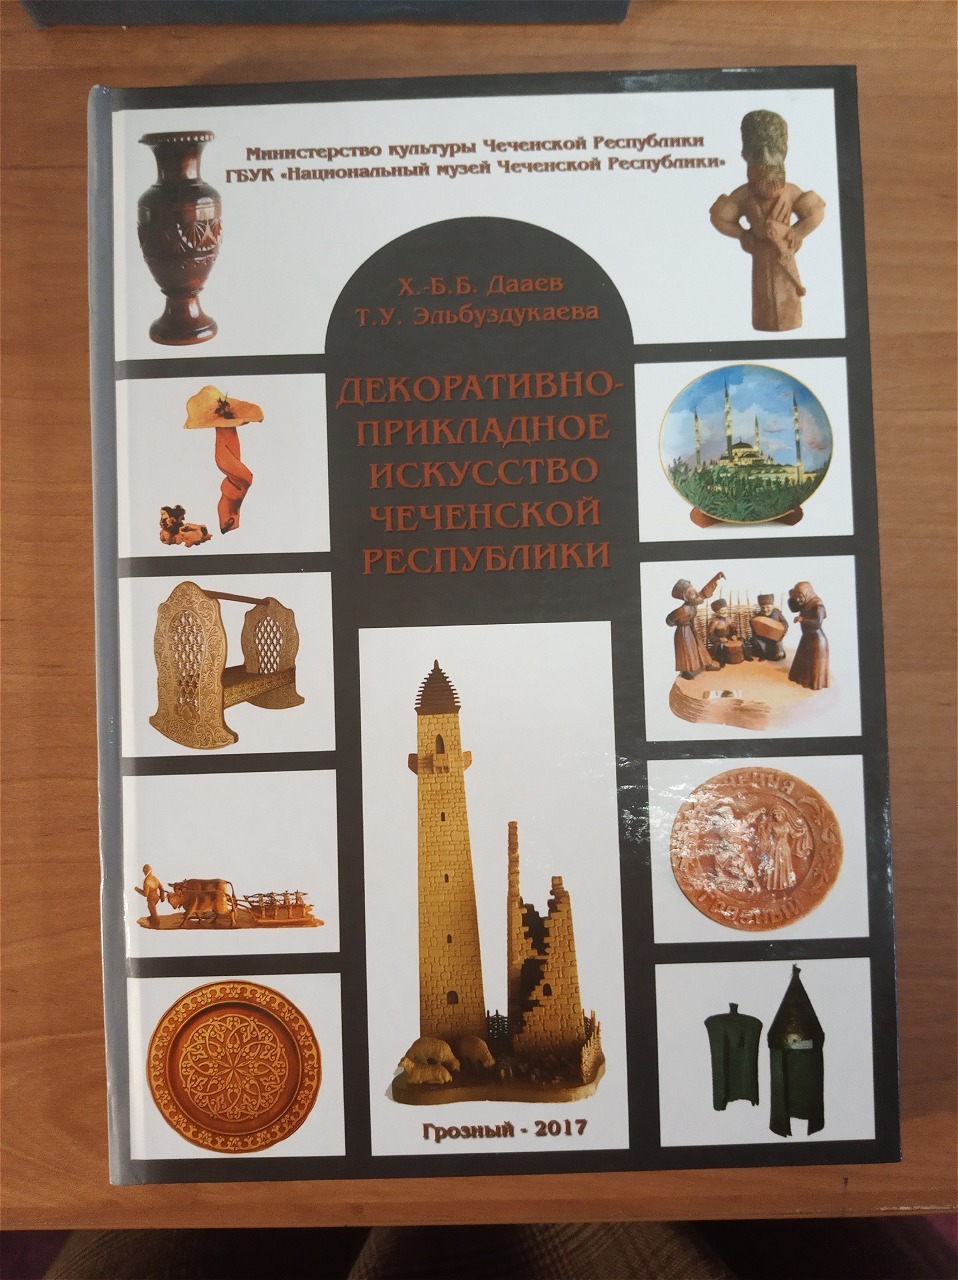 Российская государственная библиотека искусств получила в дар книги от Национальной библиотеки Чеченской республики